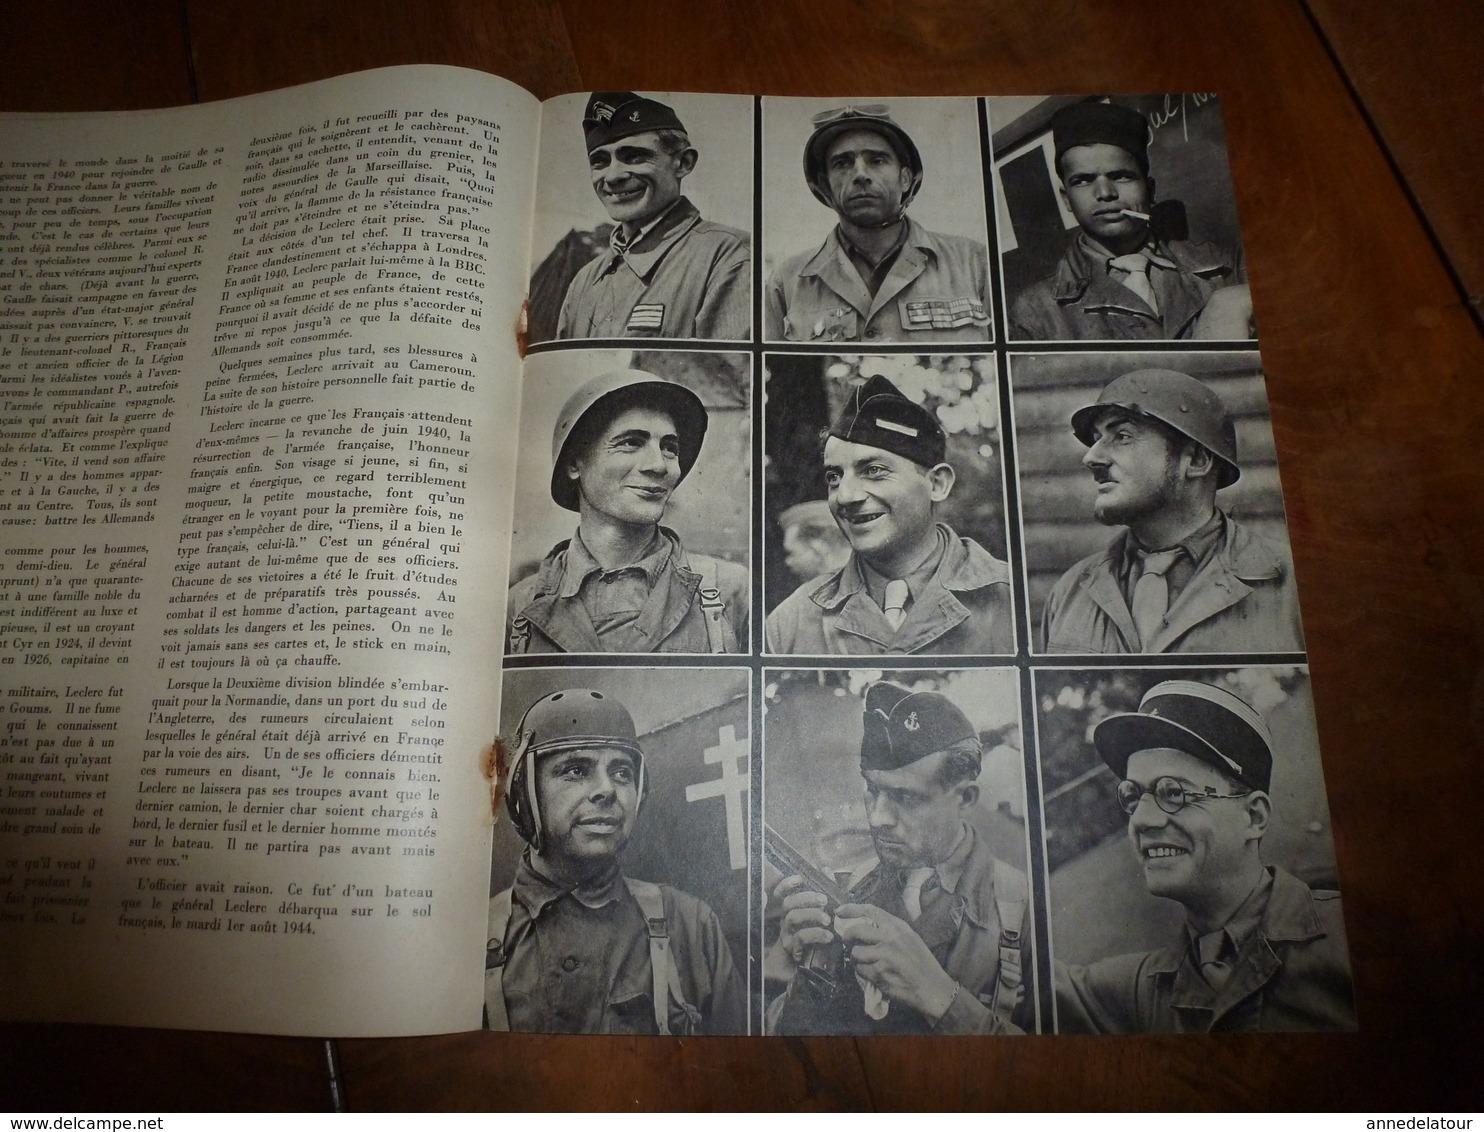 1944-45 LA DEUXIEME DIVISION BLINDEE ENTRE DANS LA BATAILLE  (document original)